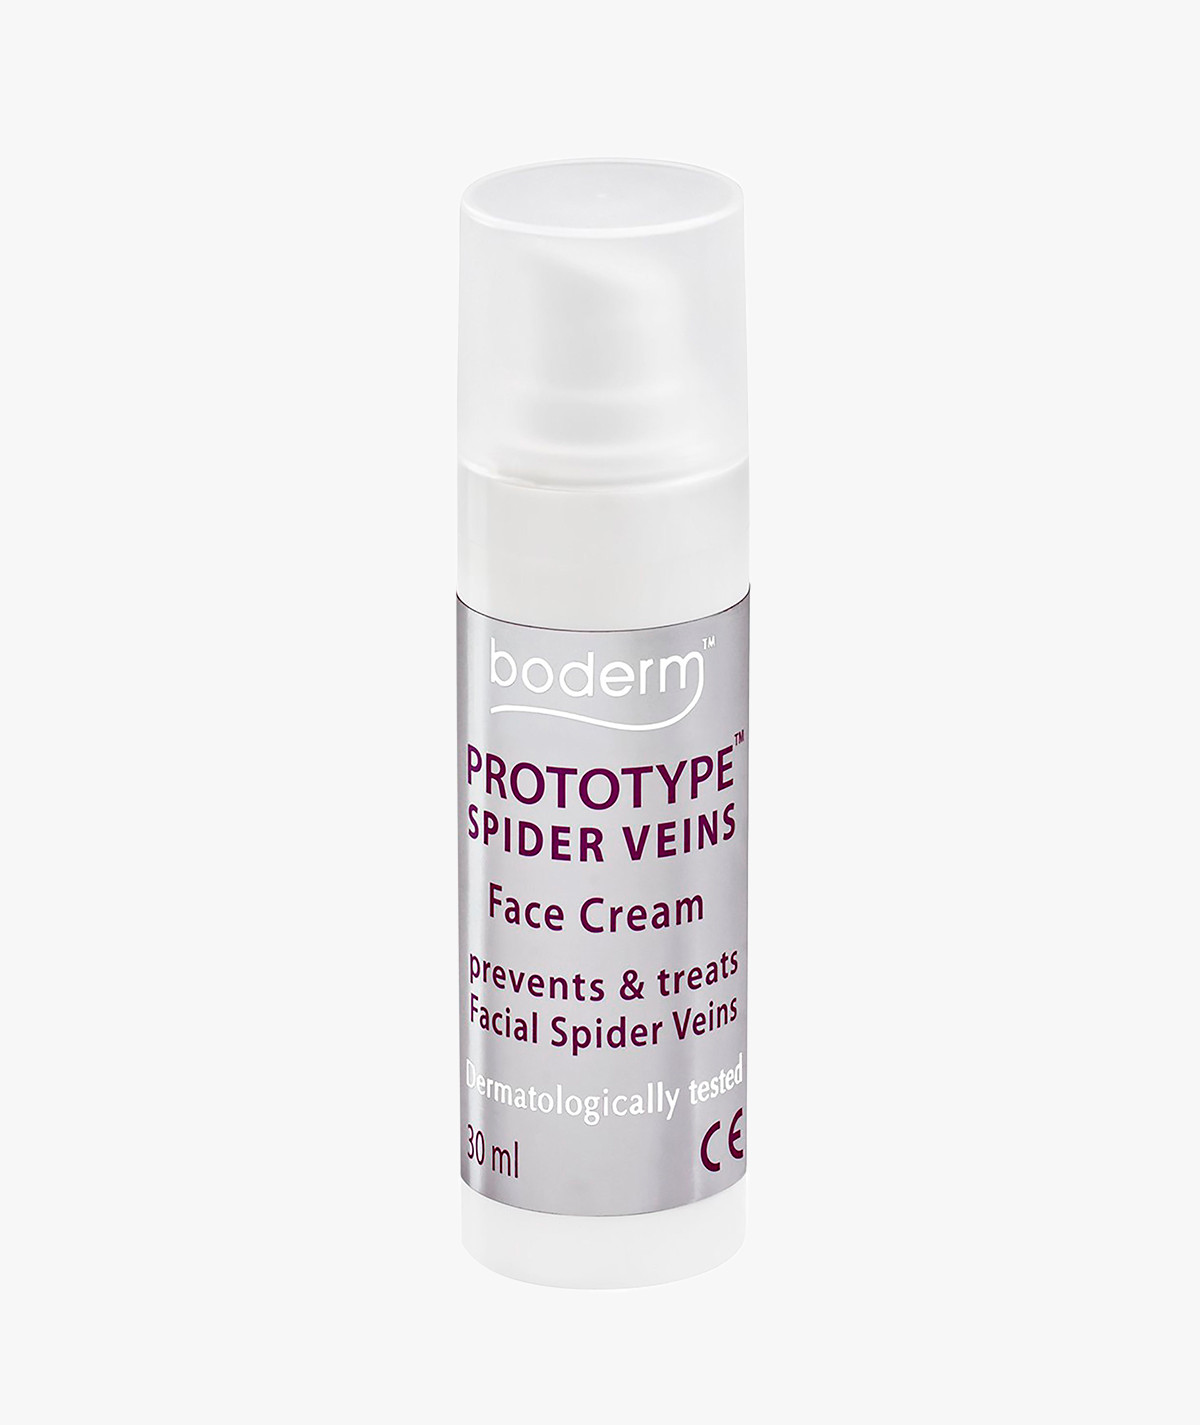 Prototype Spider Veins